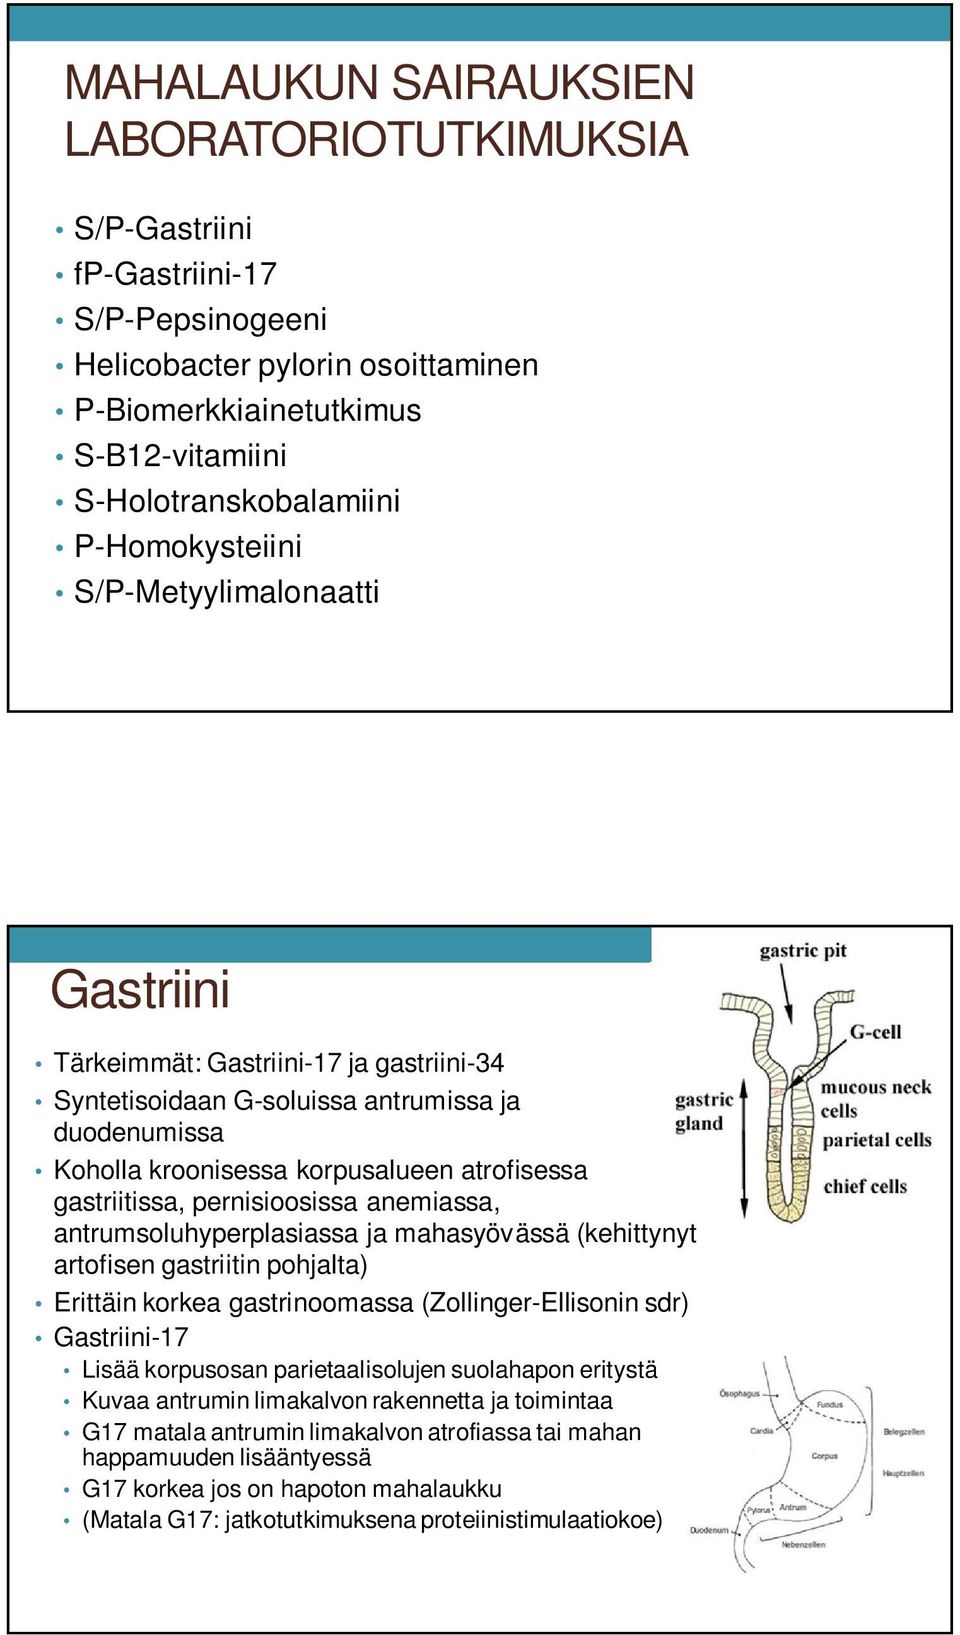 gastriitissa, pernisioosissa anemiassa, antrumsoluhyperplasiassa ja mahasyövässä (kehittynyt artofisen gastriitin pohjalta) Erittäin korkea gastrinoomassa (Zollinger-Ellisonin sdr) Gastriini-17 Lisää